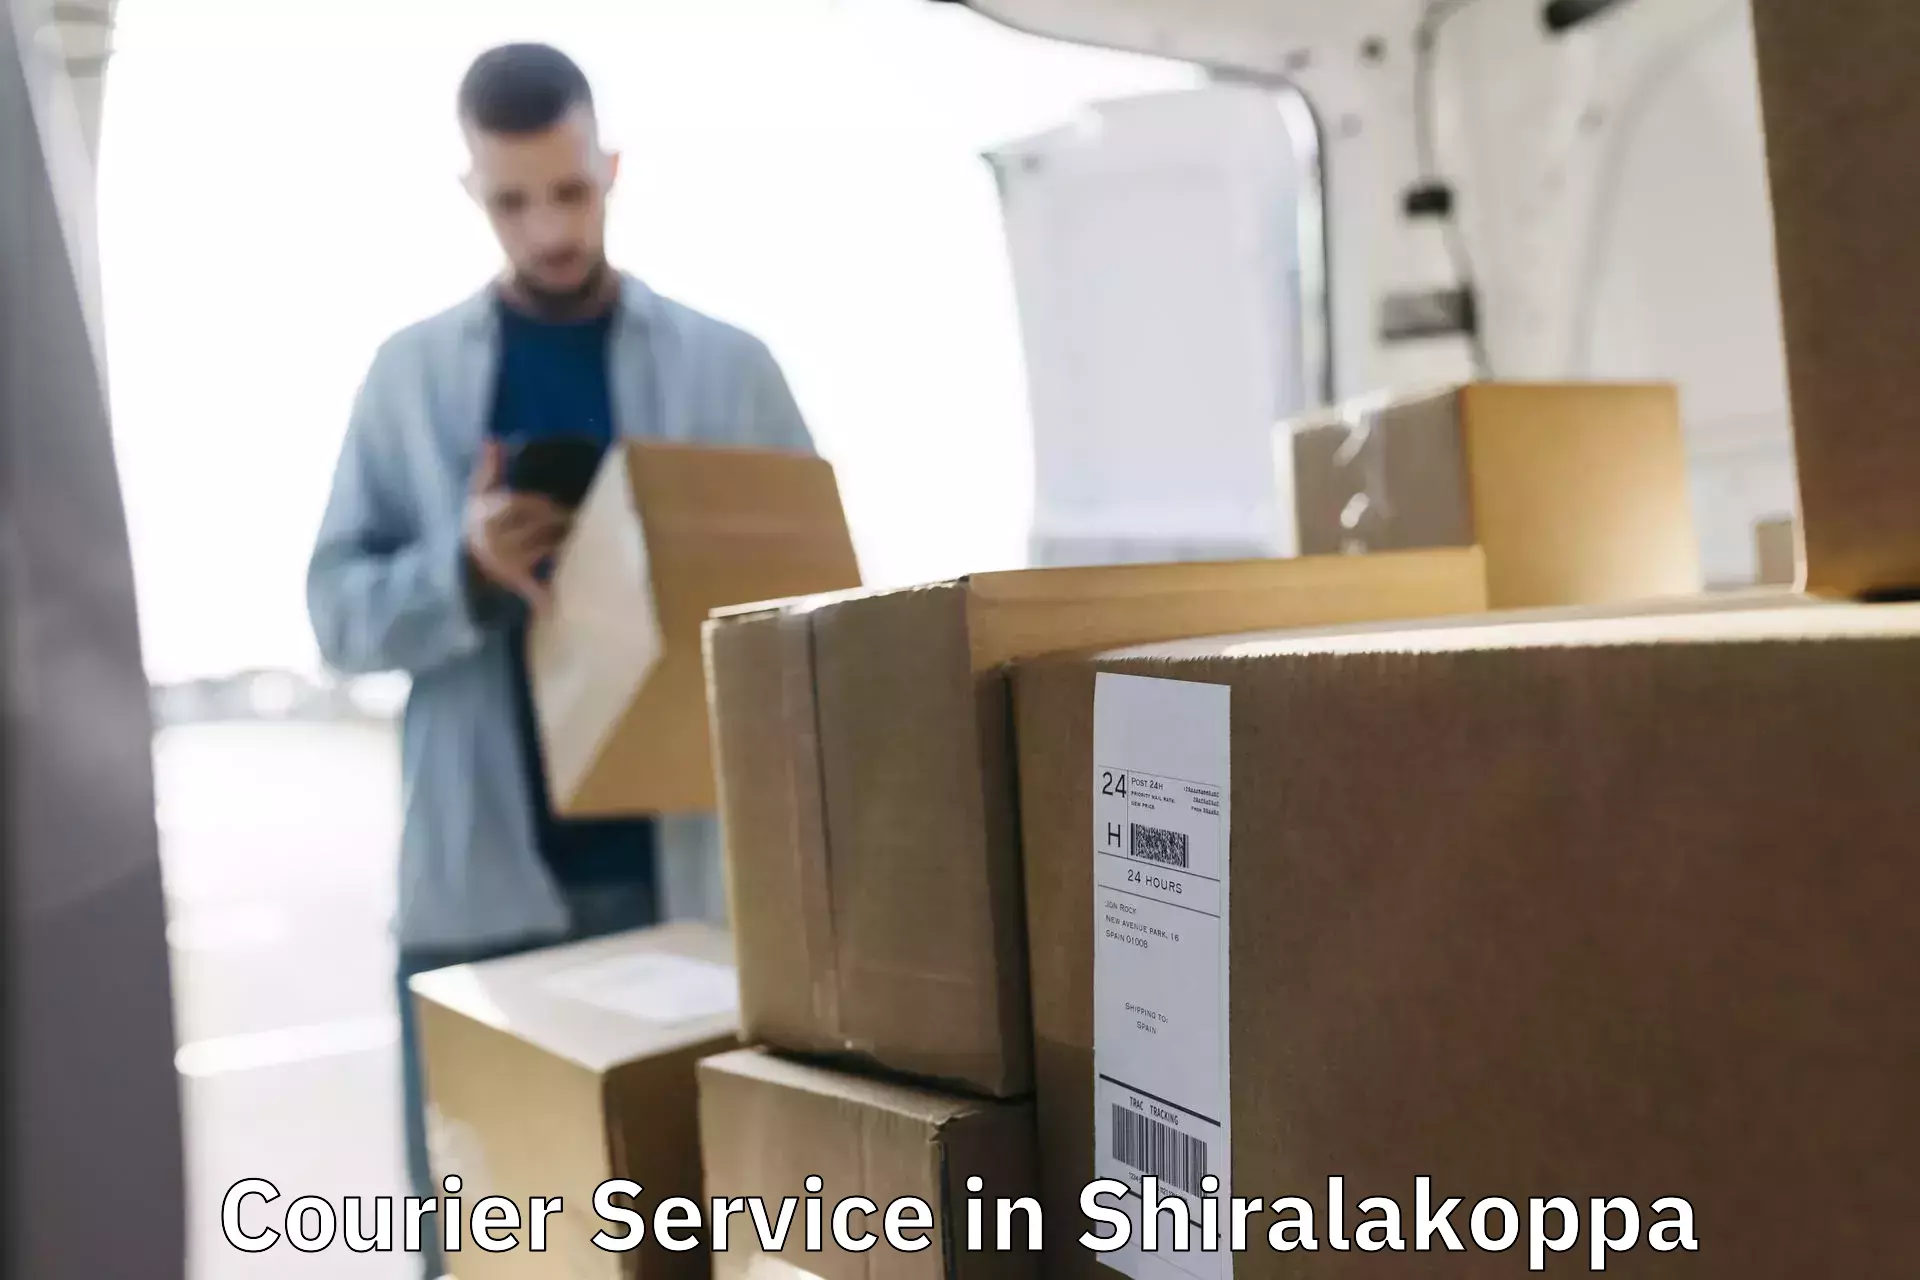 Nationwide shipping capabilities in Shiralakoppa